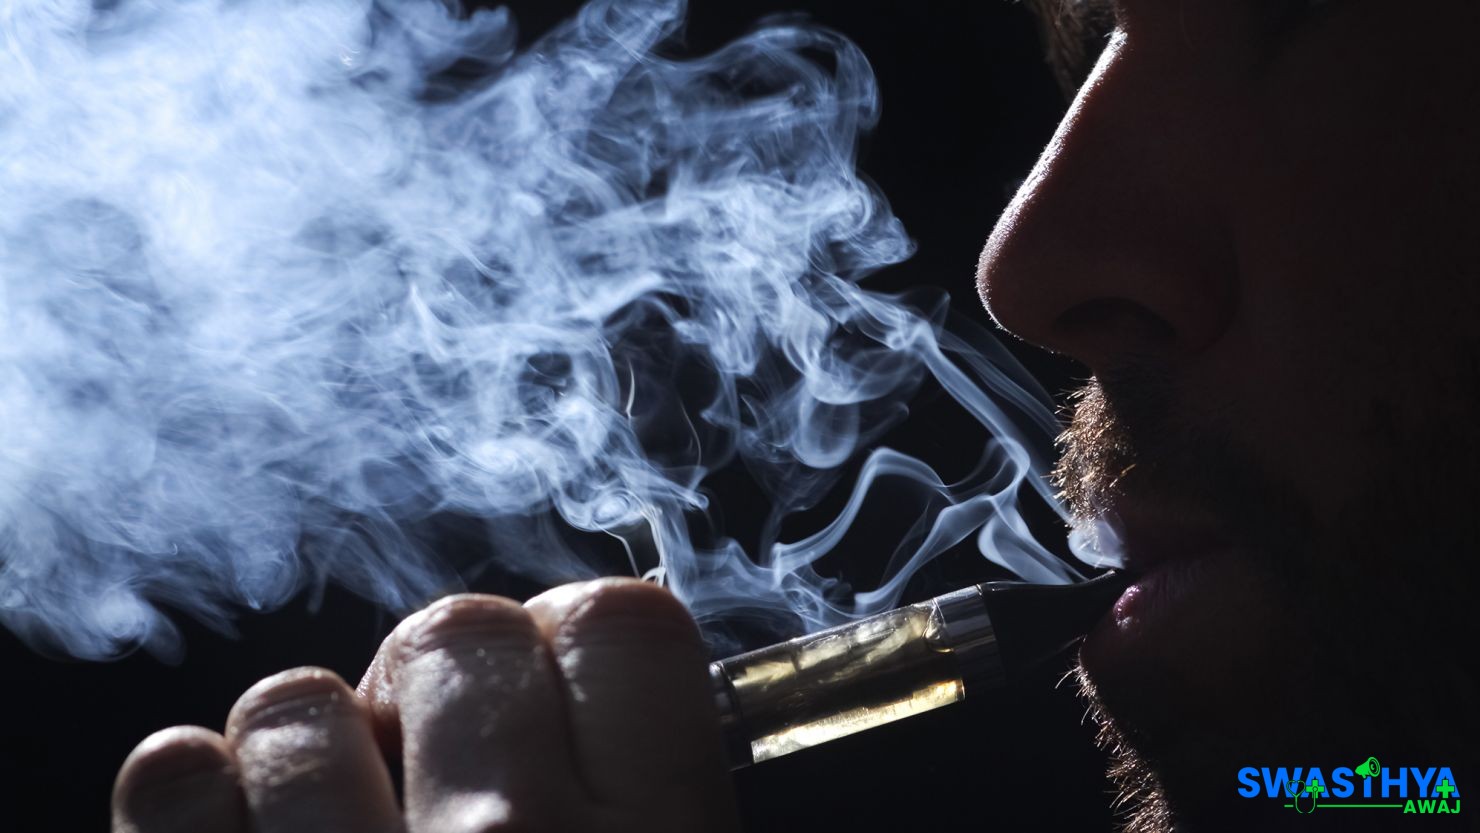 ई-सिगरेटको प्रयोग गर्दा हदृयघातको जोखिम १९ प्रतिशतले बढी हुने : अध्ययन्